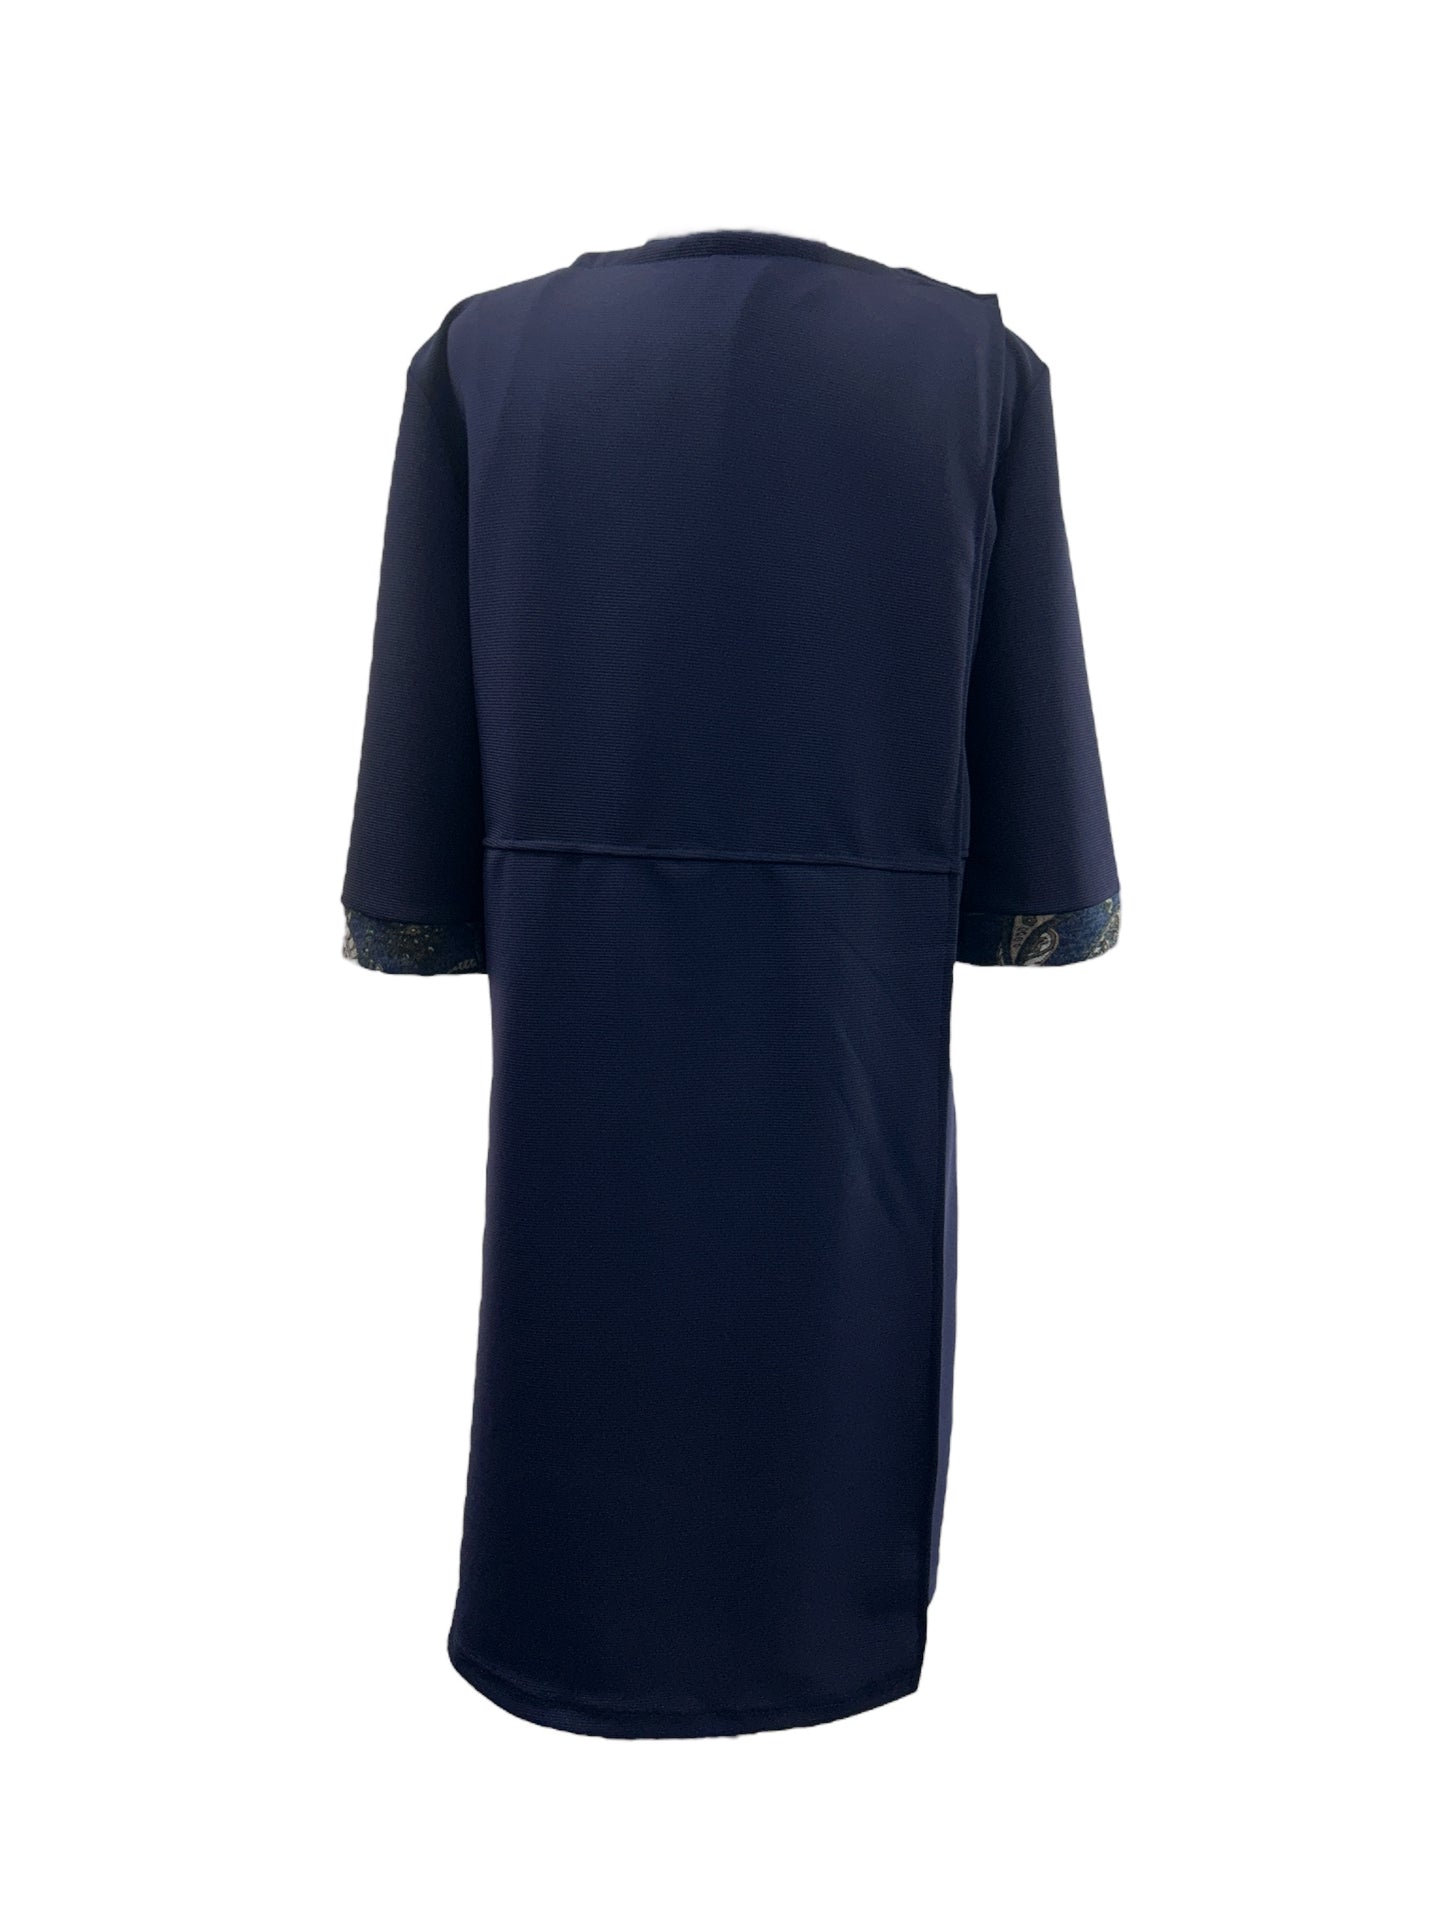 Robe adaptée marine, pour dames | Inès | A3B